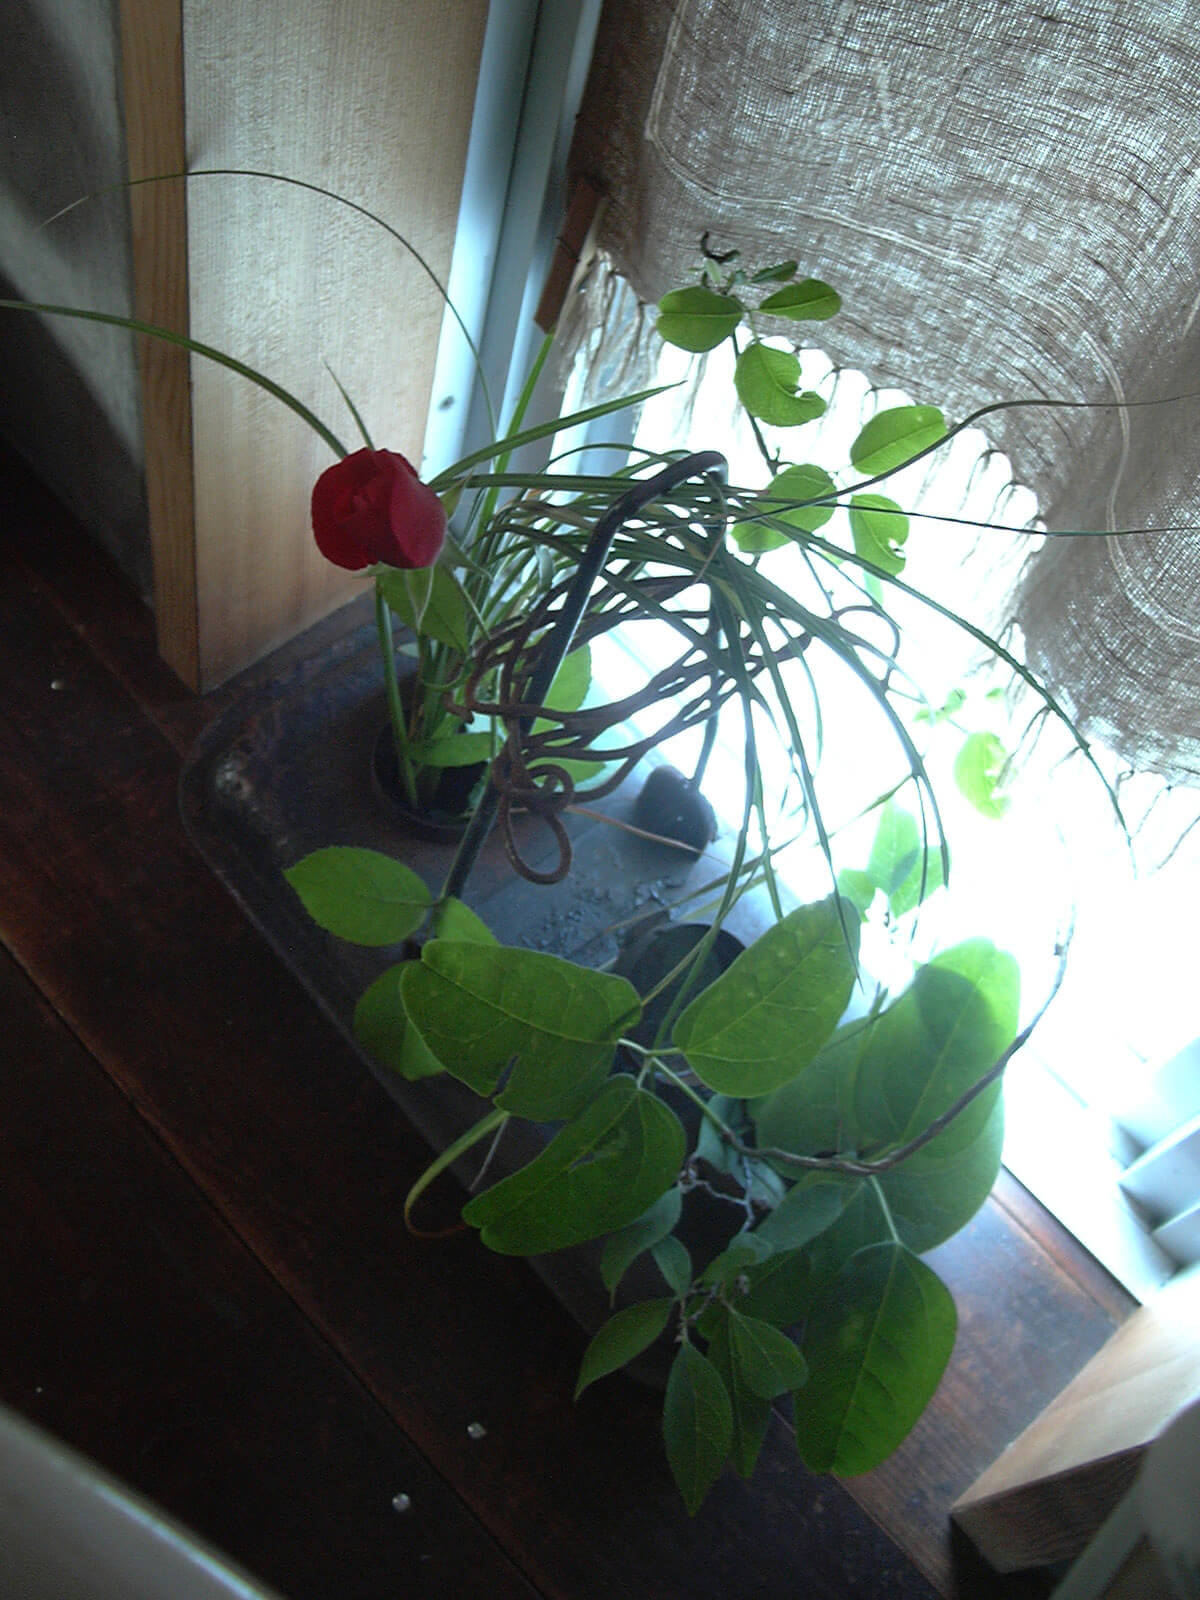 窓際に置かれた、緑の葉の植物と、赤い花が咲いた植物